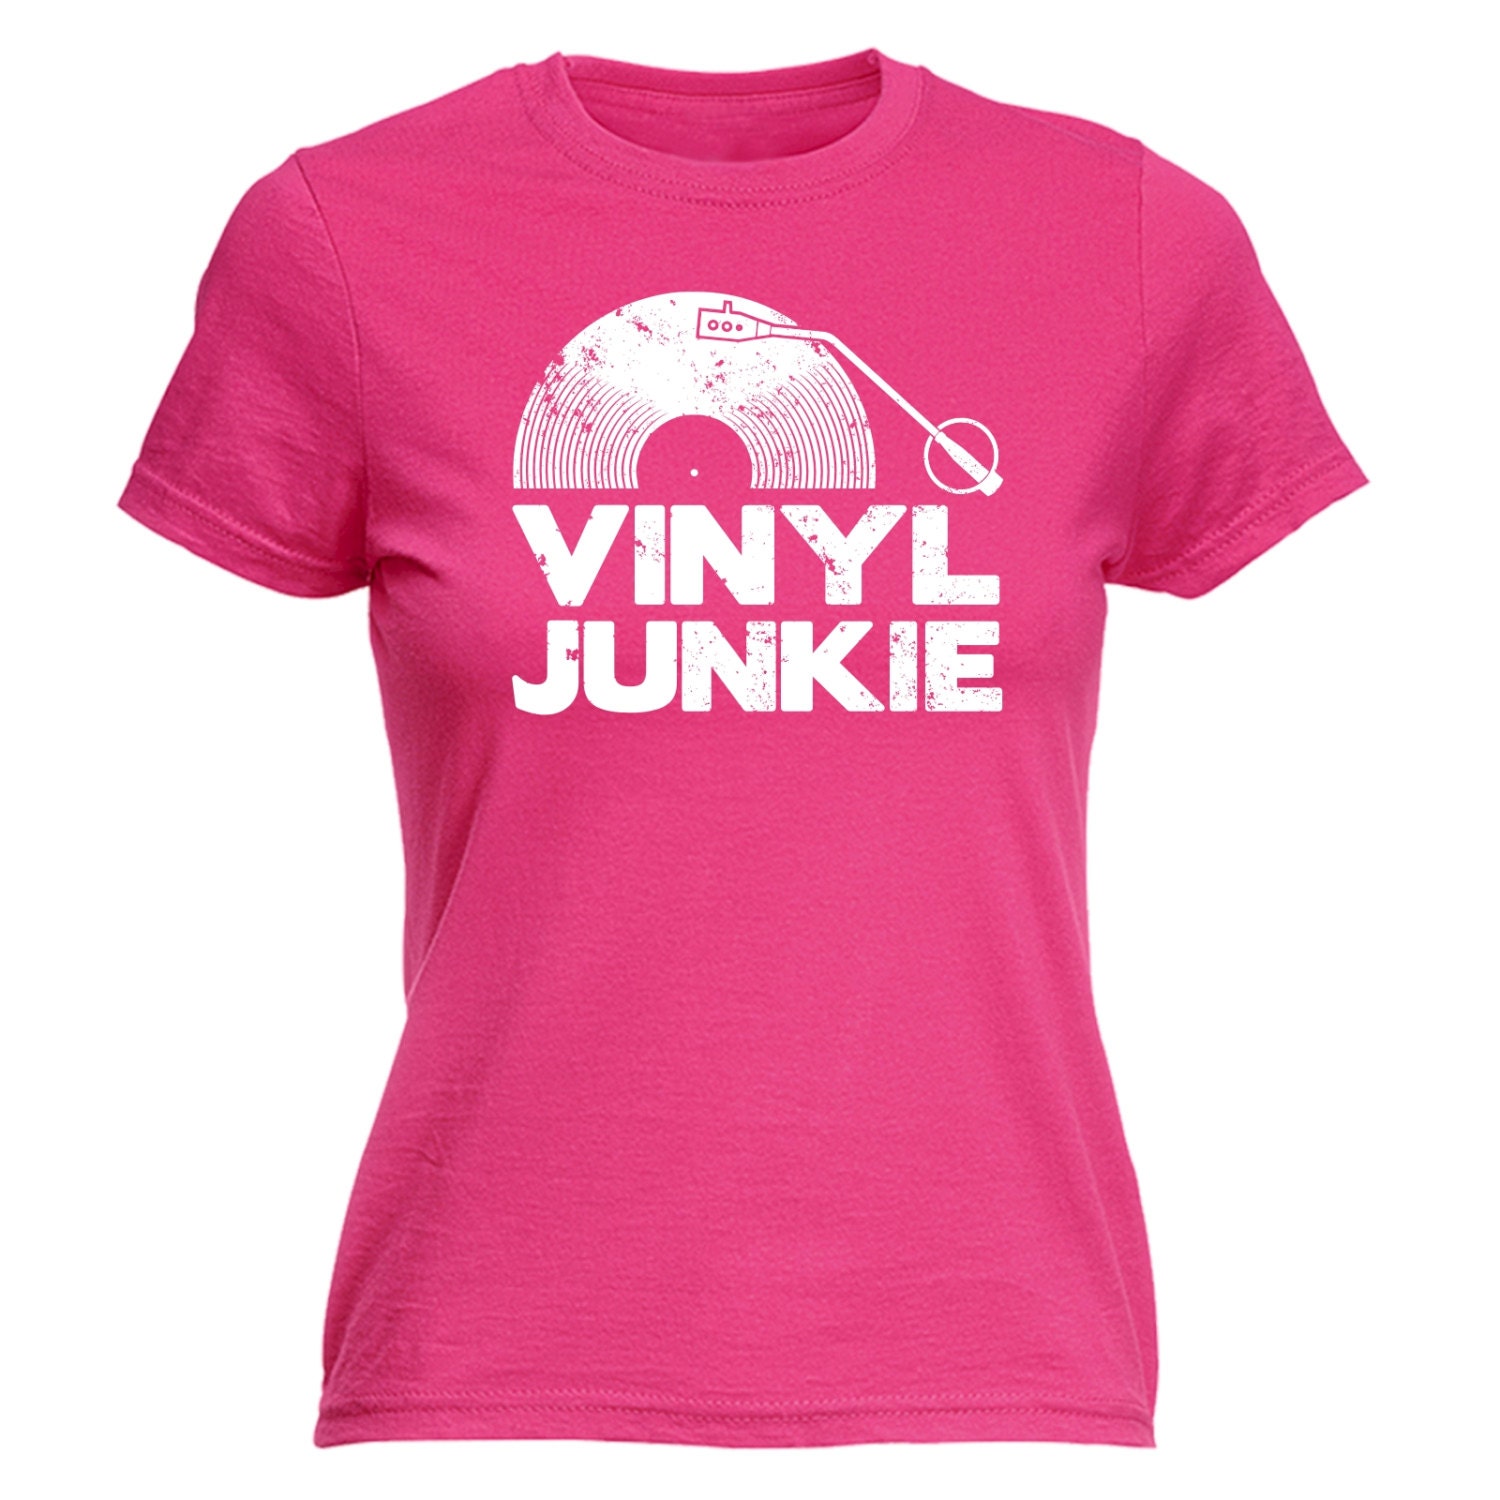 Women's Vinyl Tshirt Lady Fit Record T-Shirt Retro Vintage